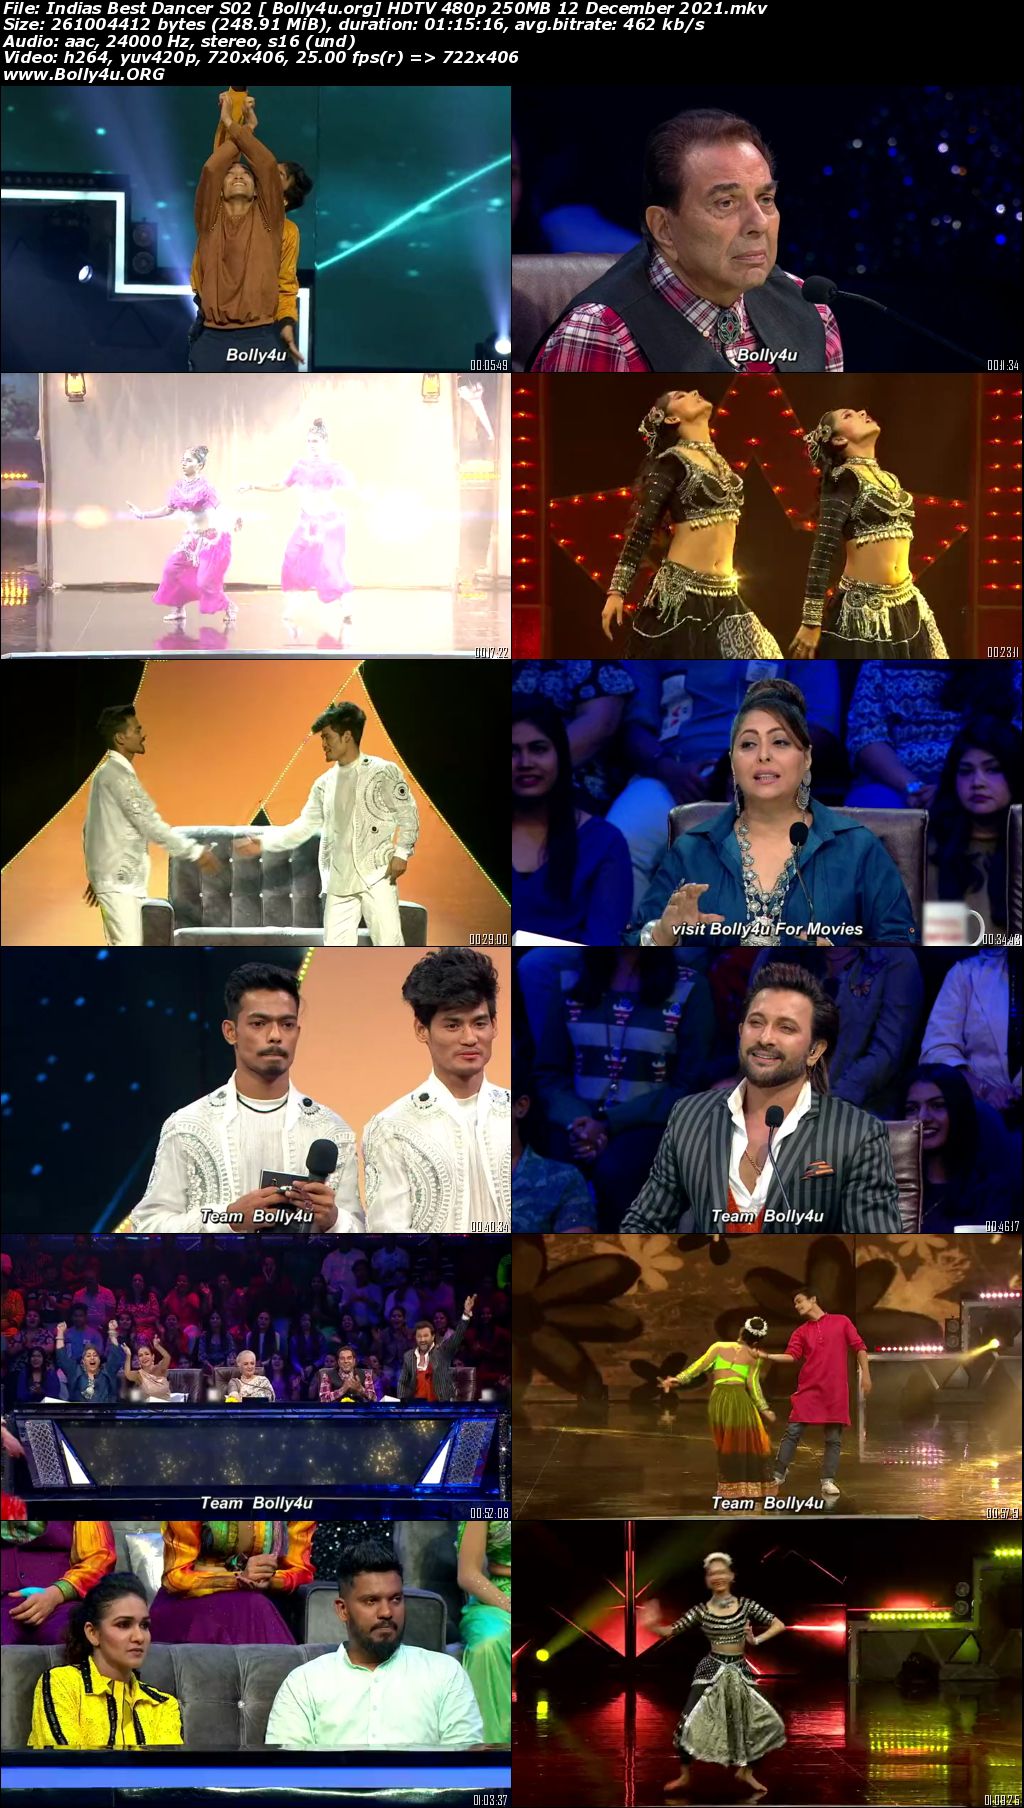 Indias Best Dancer S02 HDTV 480p 250MB 12 December 2021 Download